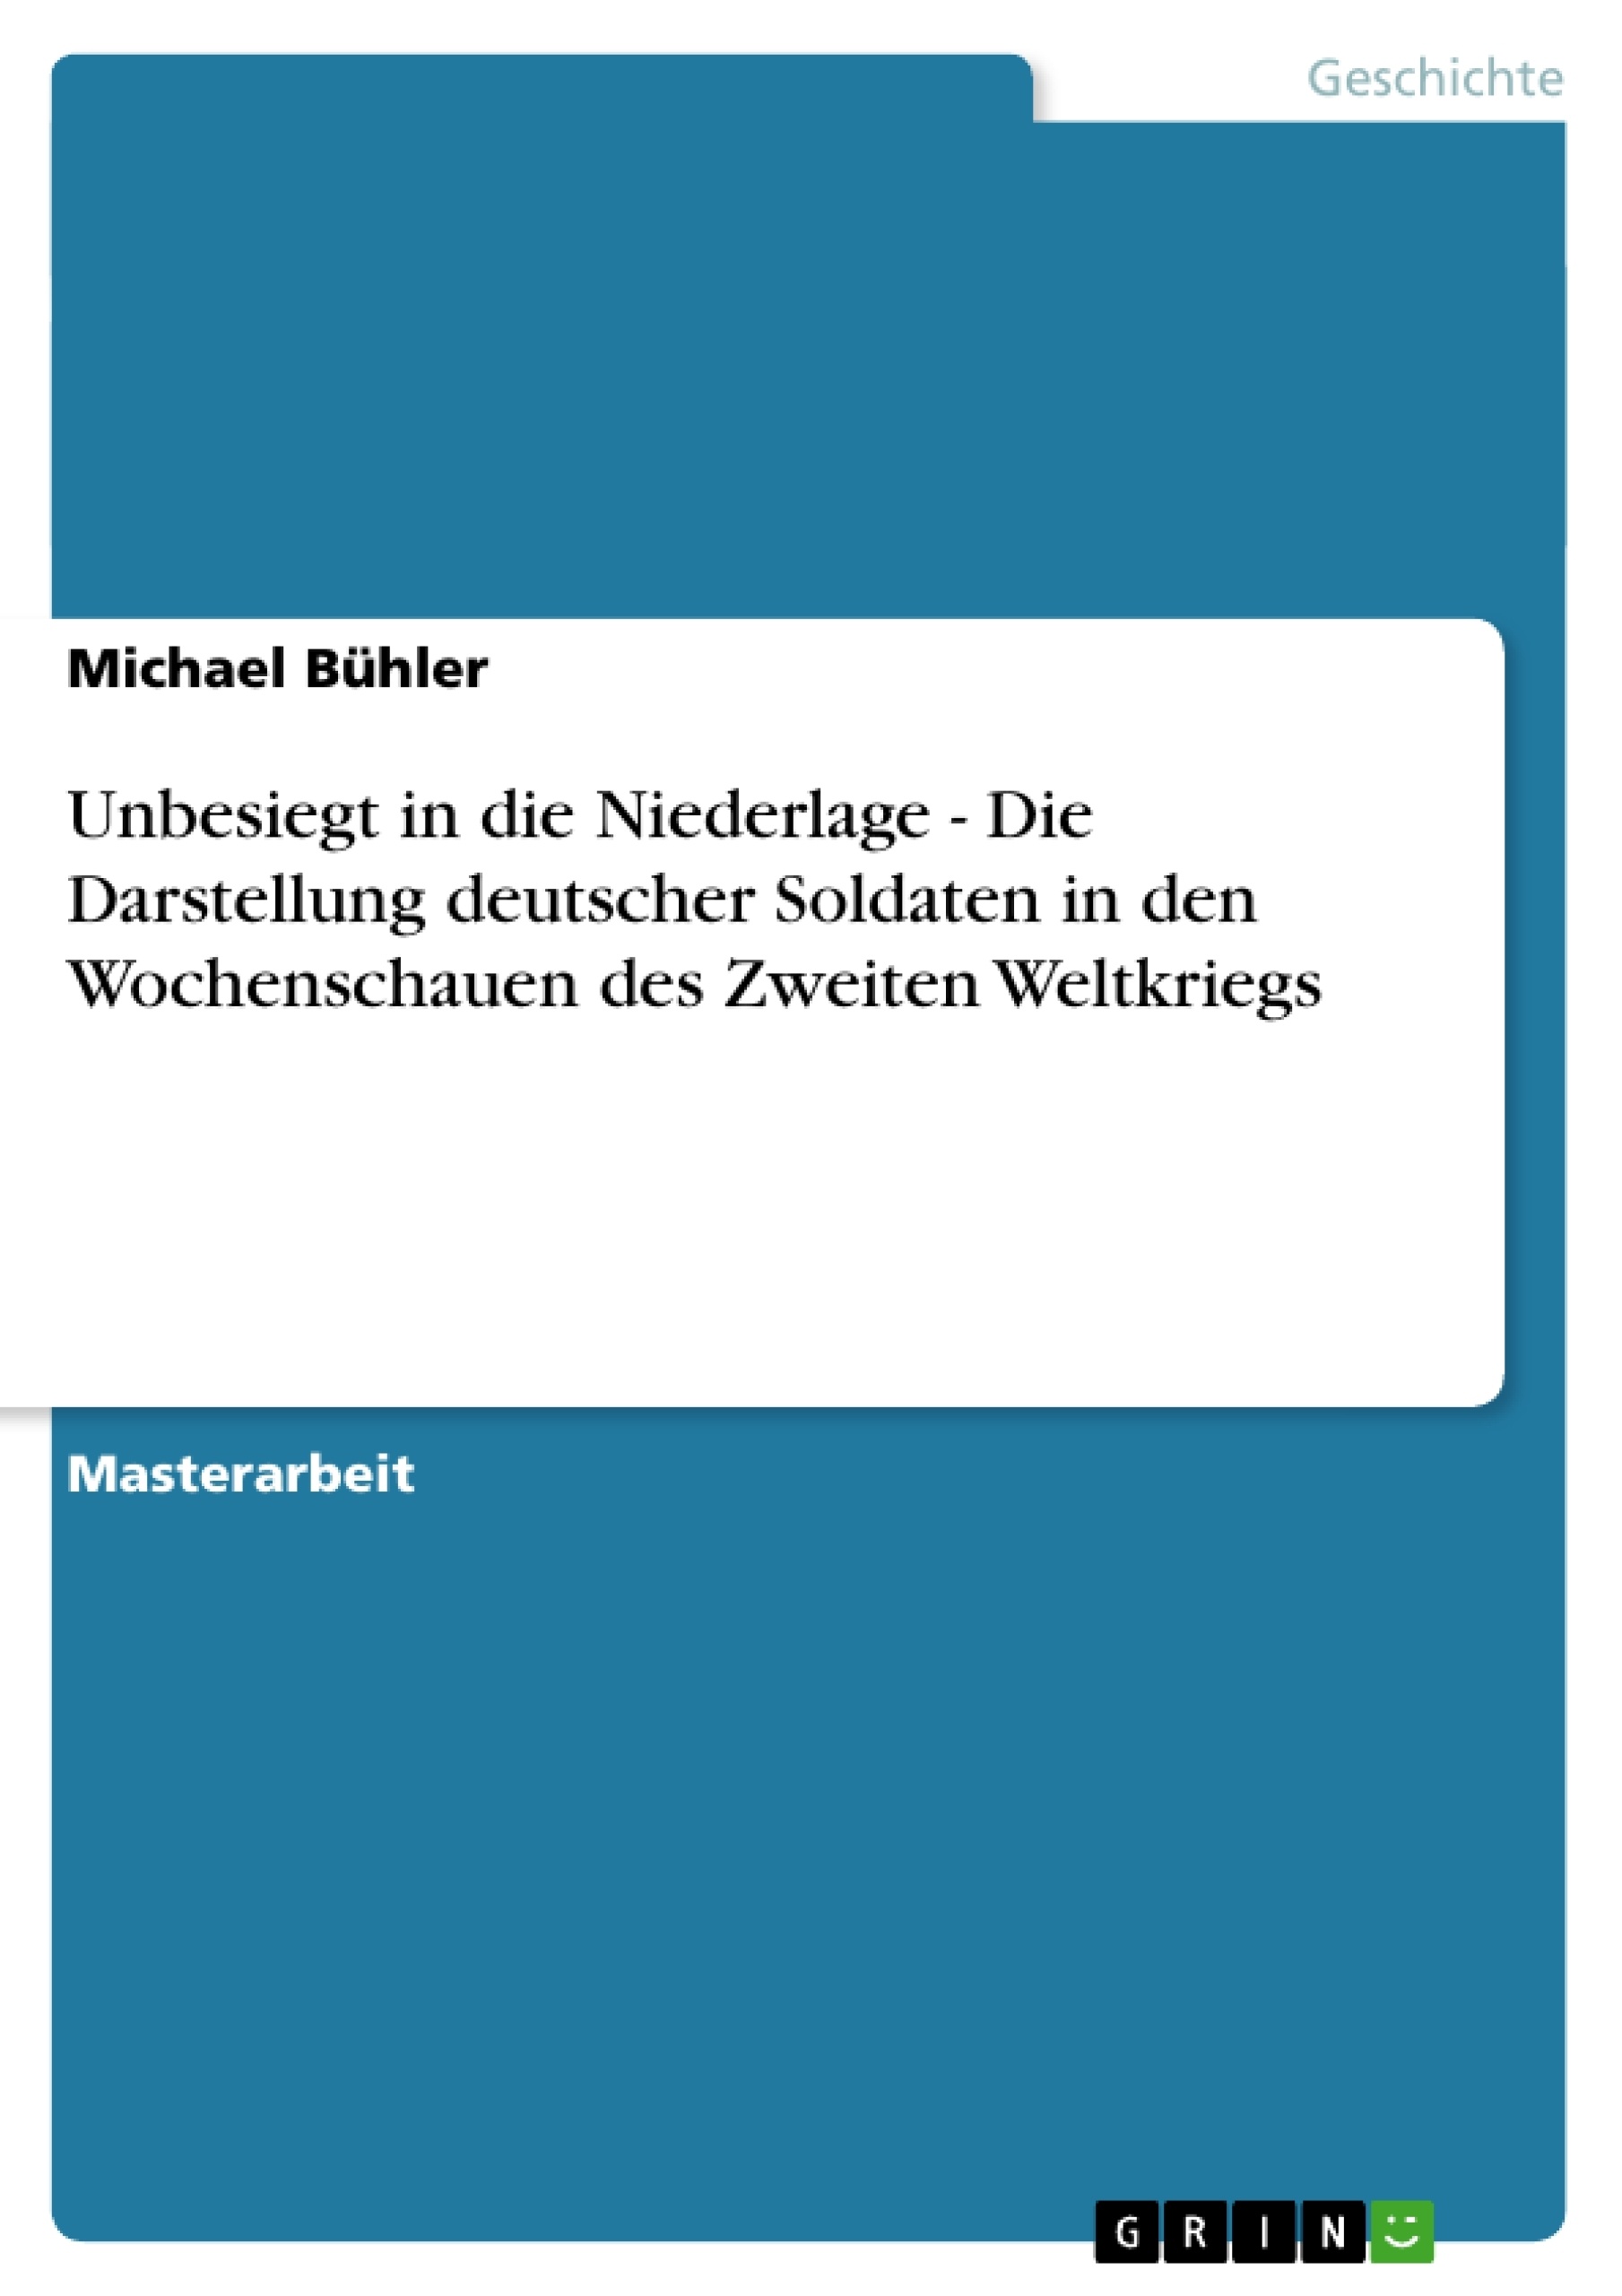 Título: Unbesiegt in die Niederlage - Die Darstellung deutscher Soldaten in den Wochenschauen des Zweiten Weltkriegs